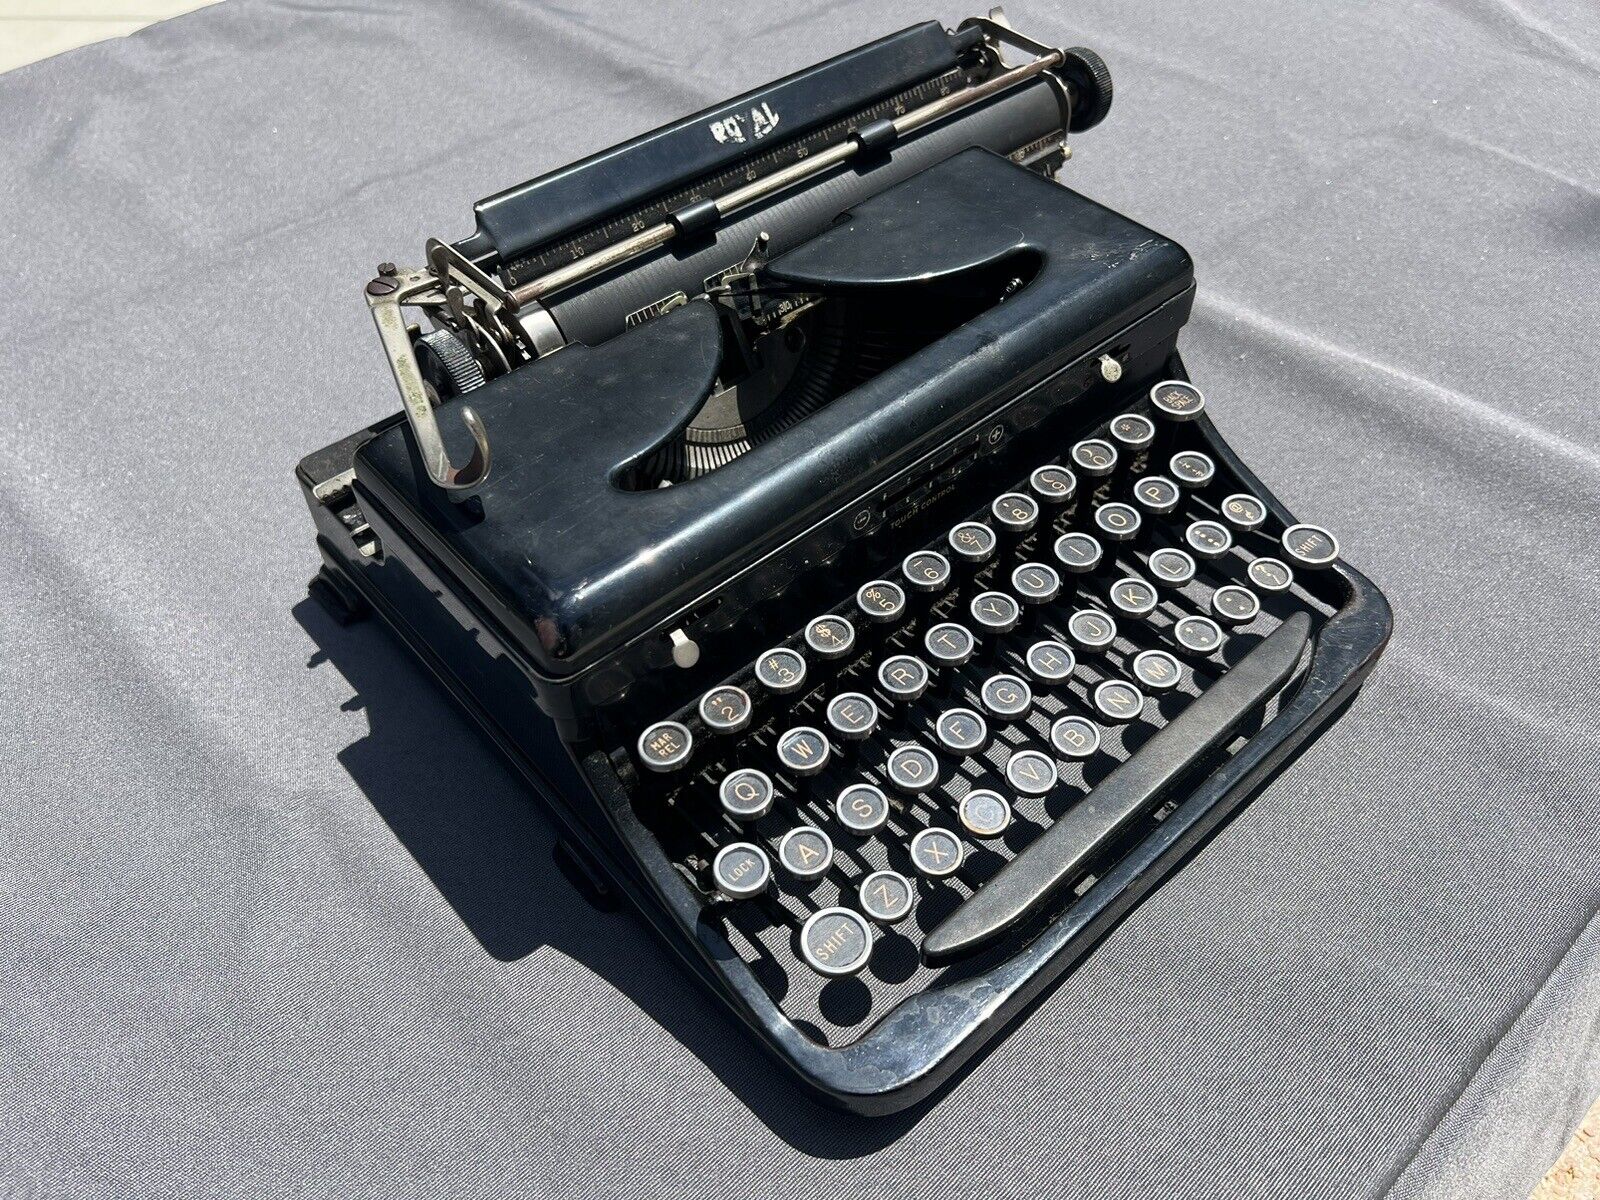 Vintage Royal Typewriter - Classic Mechanical Typewriter